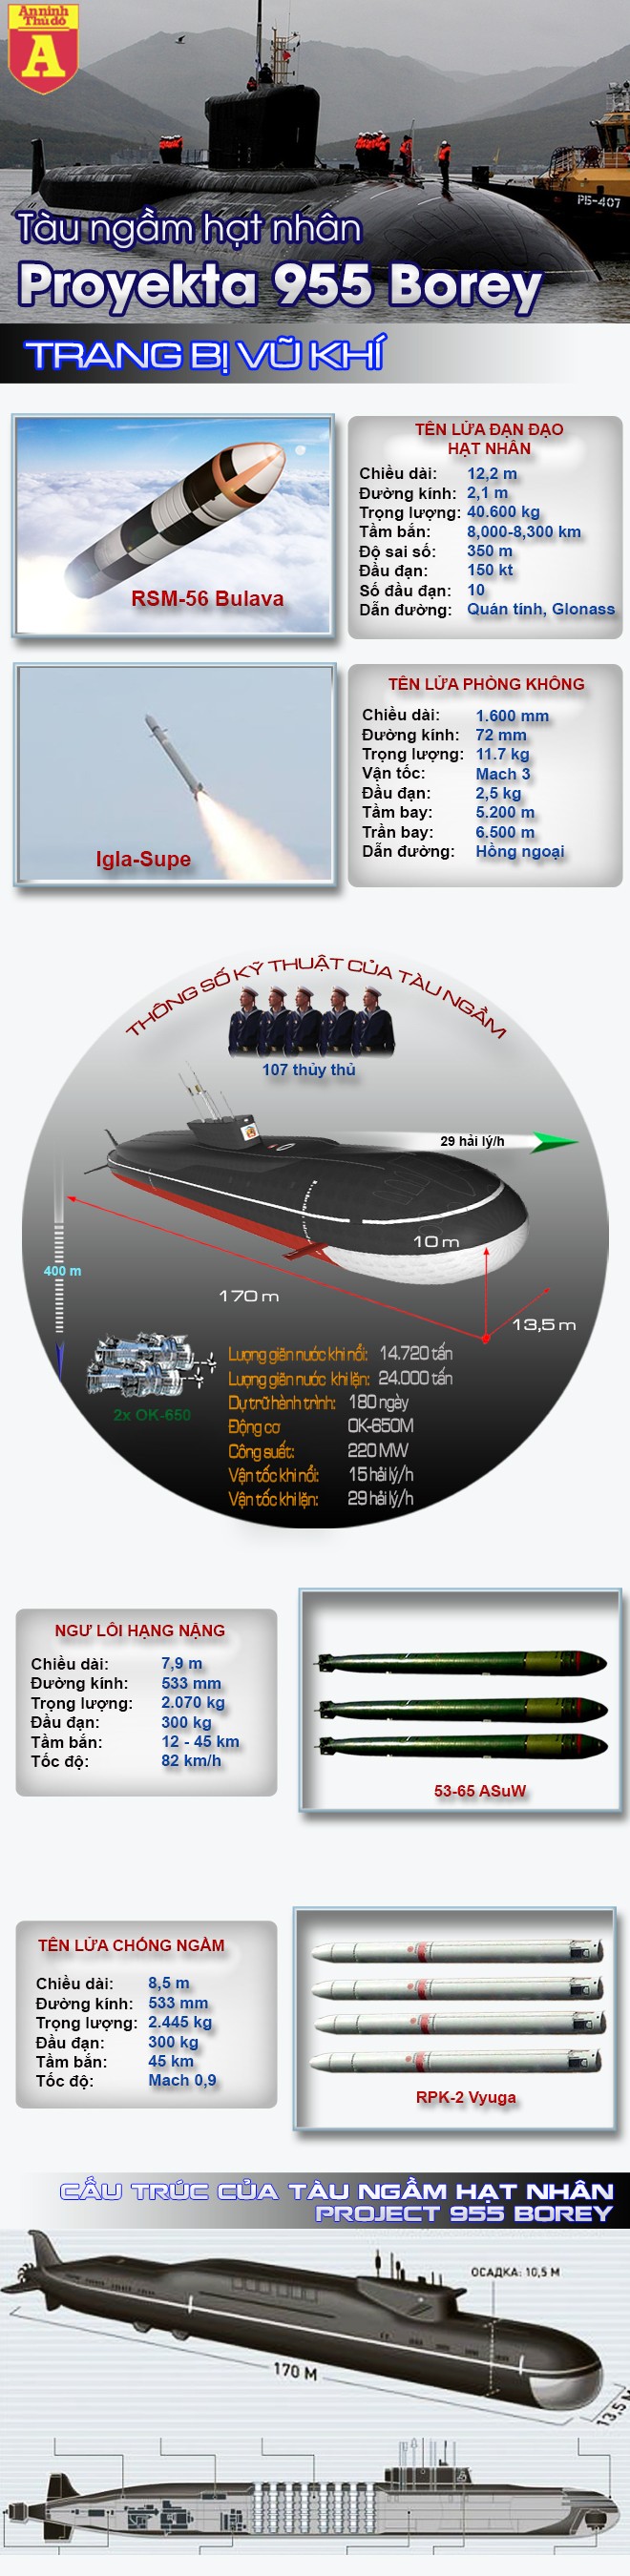 [Infographic] Siêu tàu ngầm Borey - Át chủ bài của Hải quân Nga có khả năng "thổi tung" một quốc gia ảnh 2